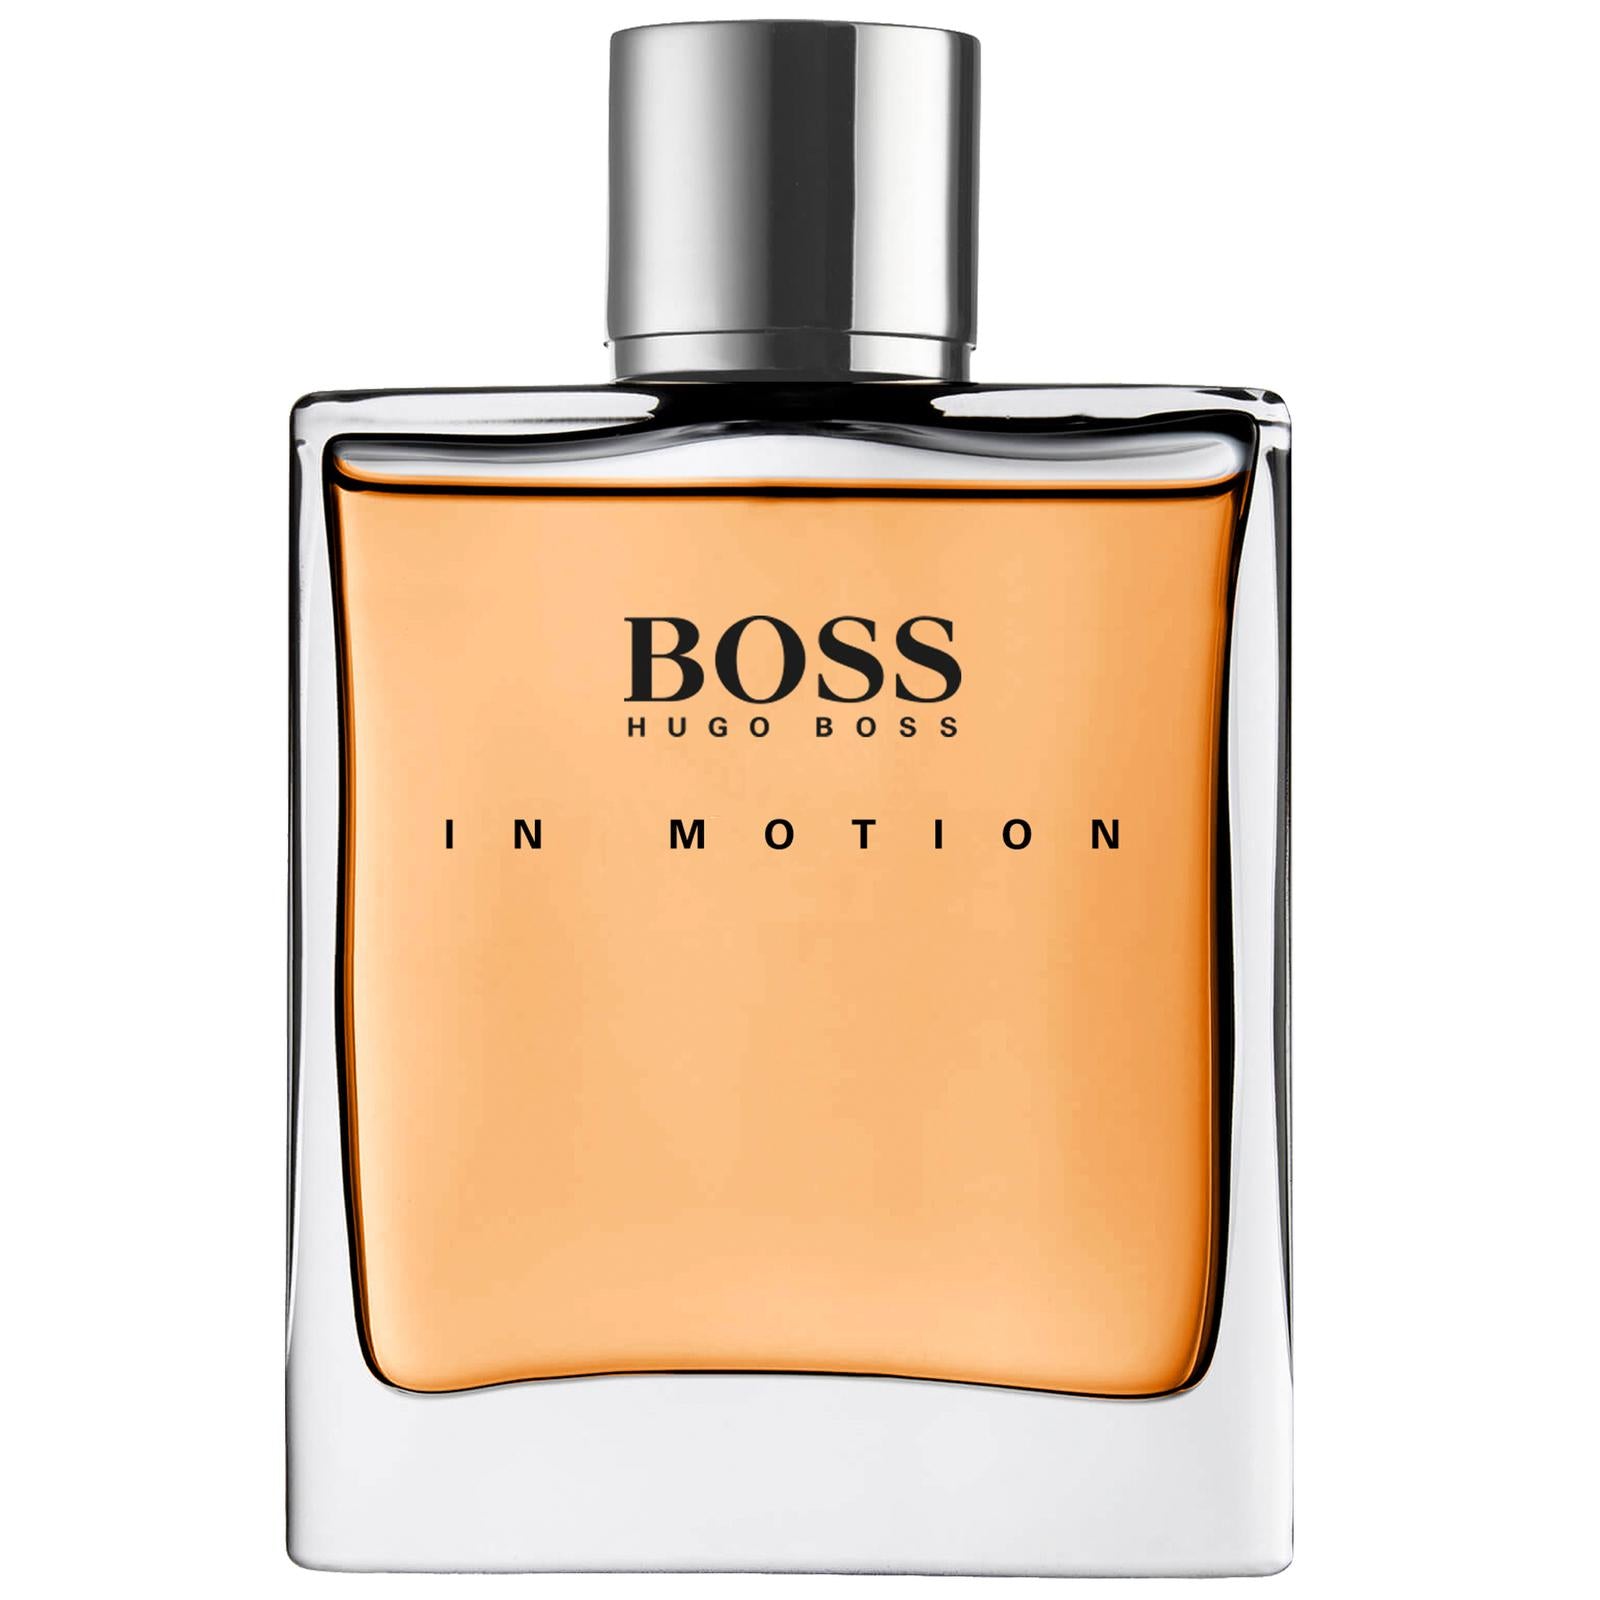 Hugo Boss Boss In Motion Original Eau de Toilette Spray 100 ml